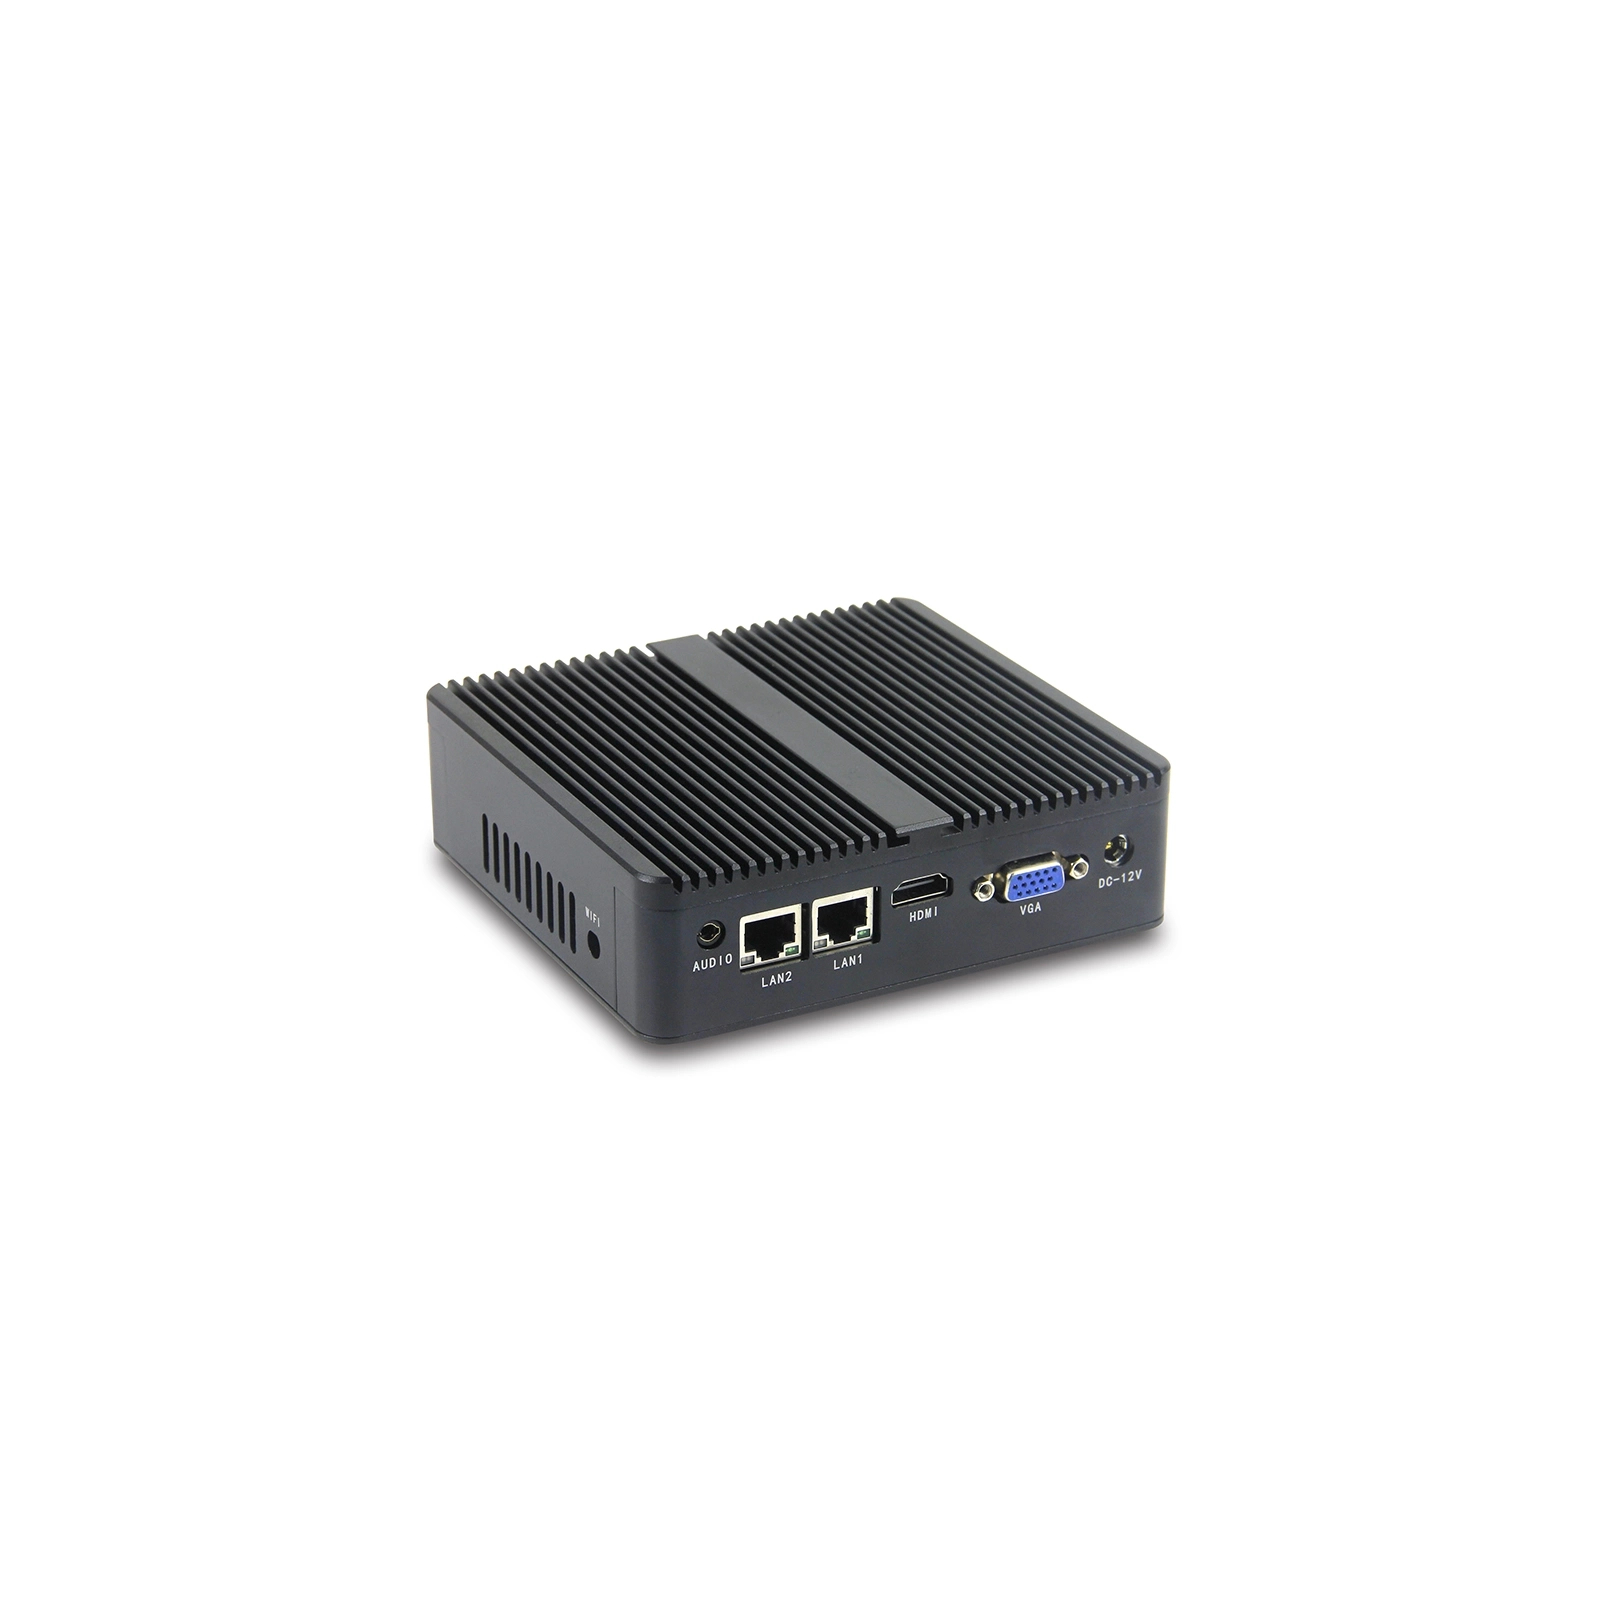 Промисловий ПК Syncotek GOLE BOX-1 J4125/4GB/128GB SSD/USBx4/RS232x2/LANx2VGA/HDMI (S-PC-0089) зображення 4